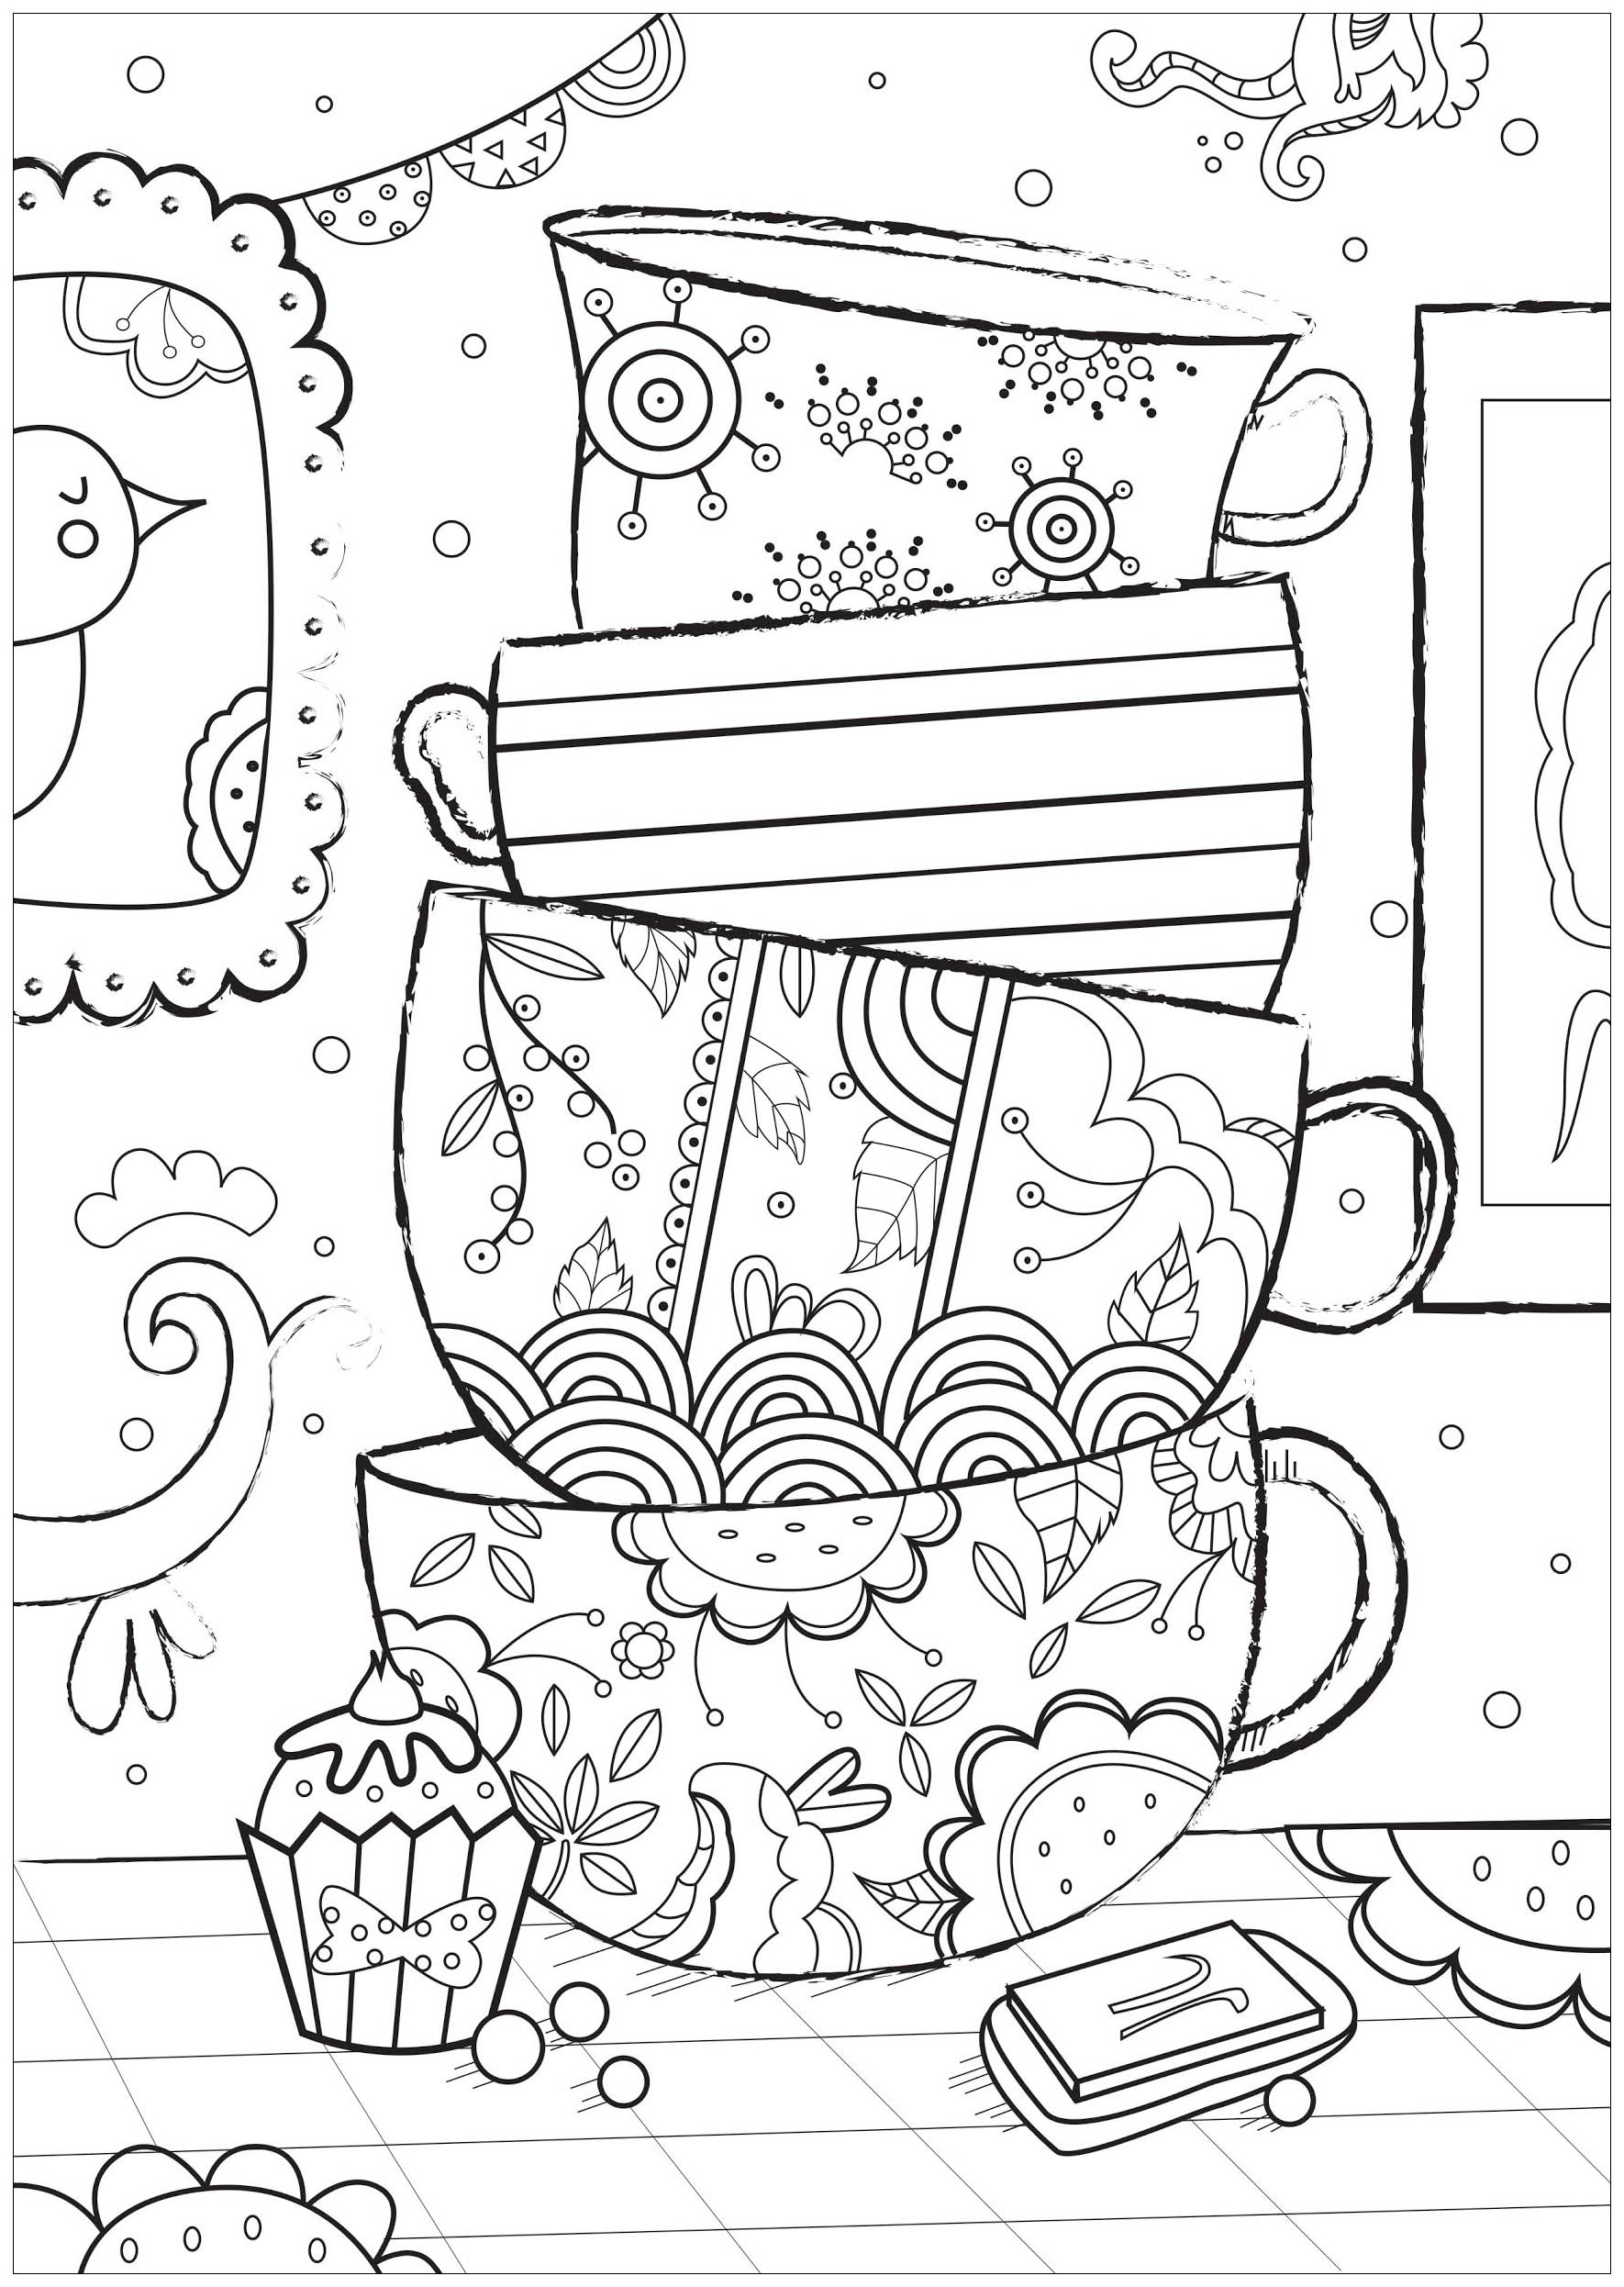 Hübsche Tassen zum Ausmalen. Färben Sie diese schönen, geschichteten Tassen. Jede Tasse bietet einzigartige Designs, von abstrakten Mustern bis hin zu floralen Formen.
Sie können verschiedene Farben für jede Tasse wählen und warum nicht Muster und Designs hinzufügen, um sie zu personalisieren.